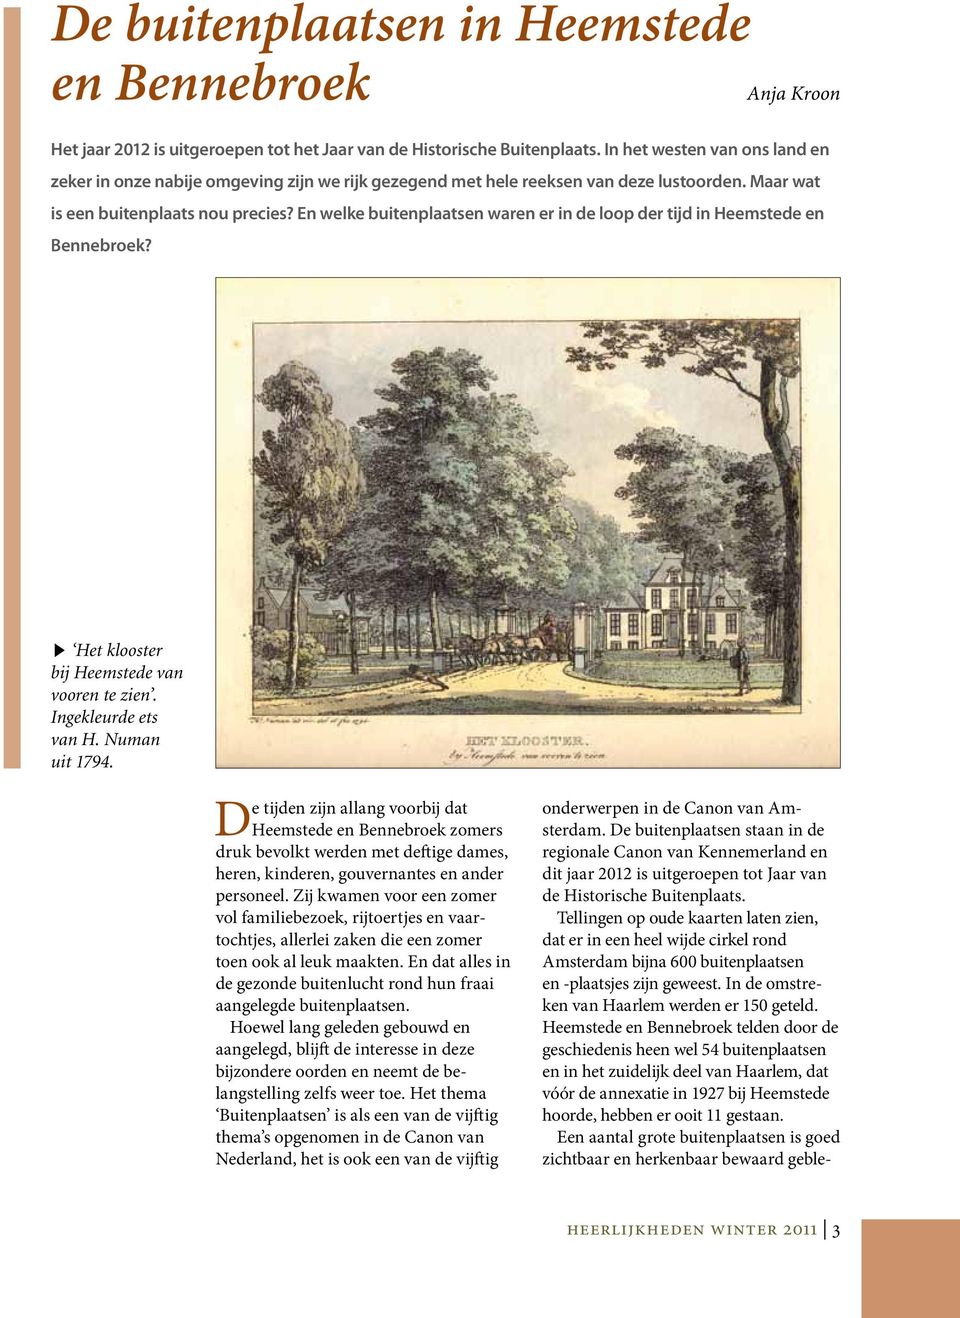 En welke buitenplaatsen waren er in de loop der tijd in Heemstede en Bennebroek? Het klooster bij Heemstede van vooren te zien. Ingekleurde ets van H. Numan uit 1794.